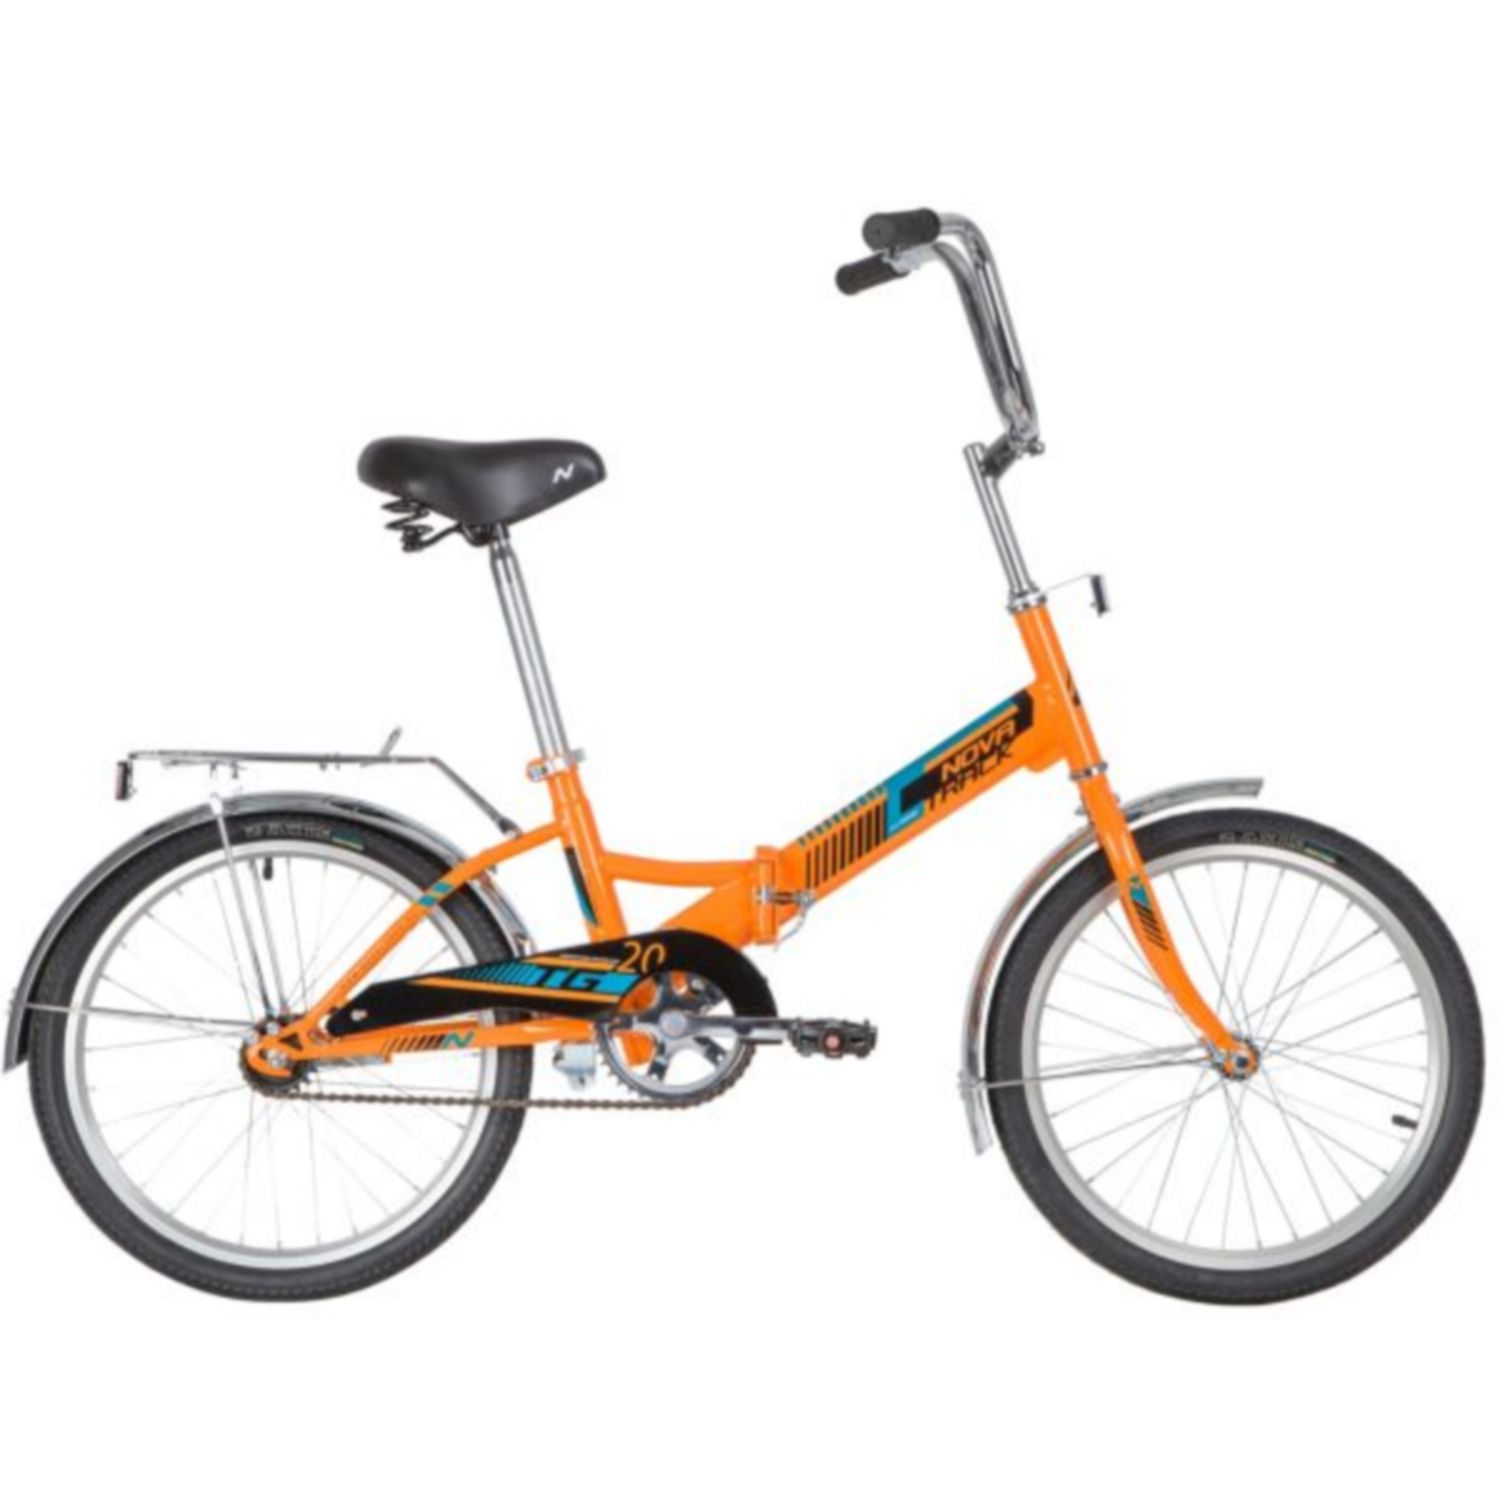 Фото выбрать и купить велосипед novatrack 20" складной, tg20, оранжевый, тормоз нож, двойной обод, багажник велосипеды  со склада в СПб - большой выбор для взрослого и для детей, велосипед novatrack 20" складной, tg20, оранжевый, тормоз нож, двойной обод, багажник велосипеды в наличии - интернет-магазин Мастерская Тимура